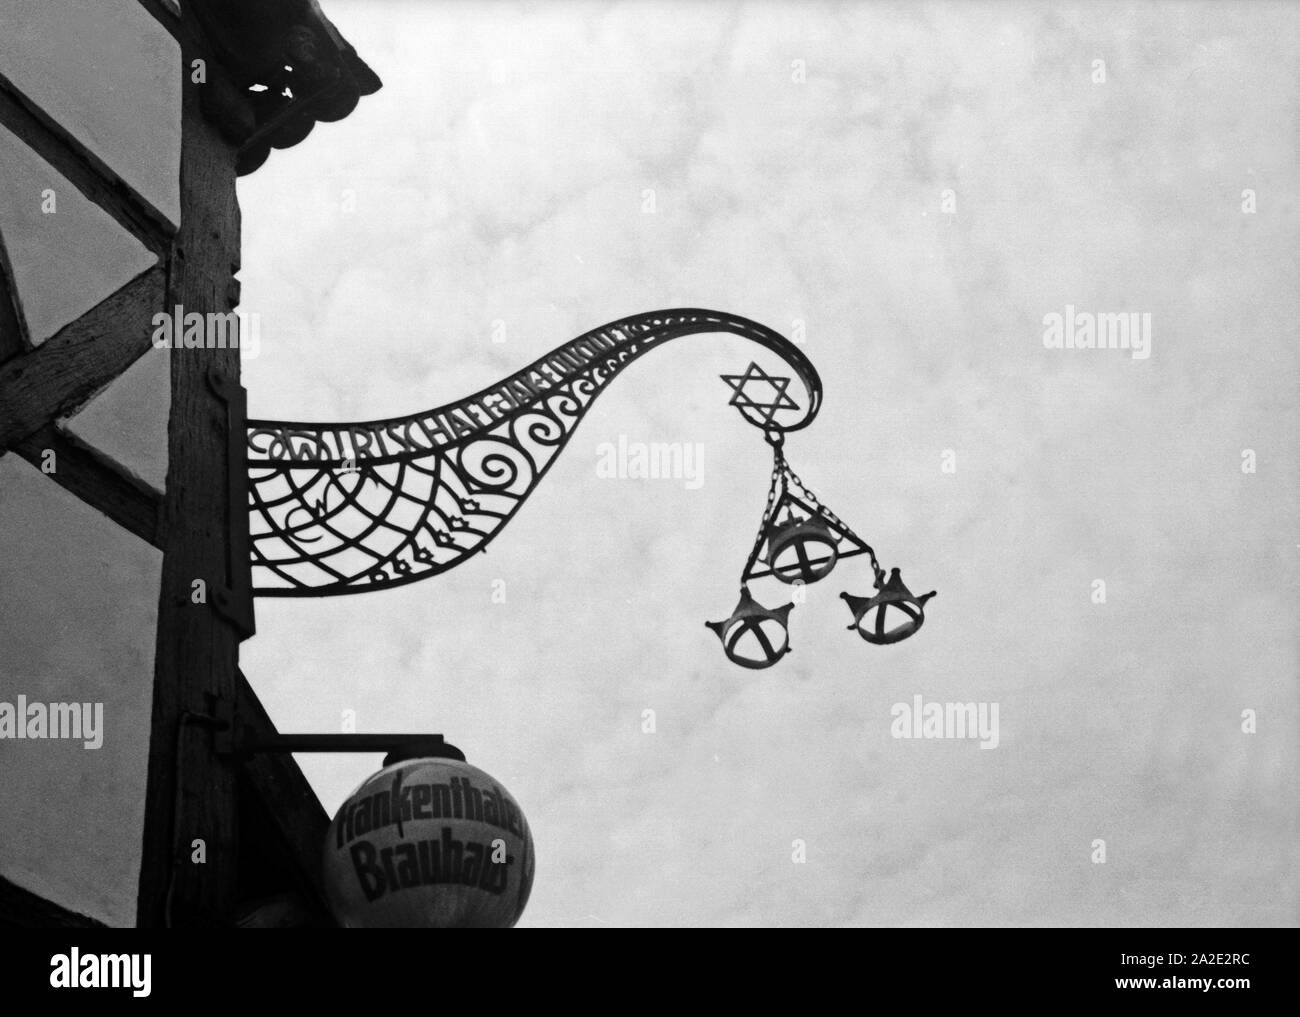 Wirtshausschild Frankenthaler Das zum Brauhaus à Schifferstadt, Deutschland 1930 er Jahre. Le signe avec les symboles de l'Franktenthaler Brauhaus restaurant brasserie à Schifferstadt, Allemagne, 1930. Banque D'Images